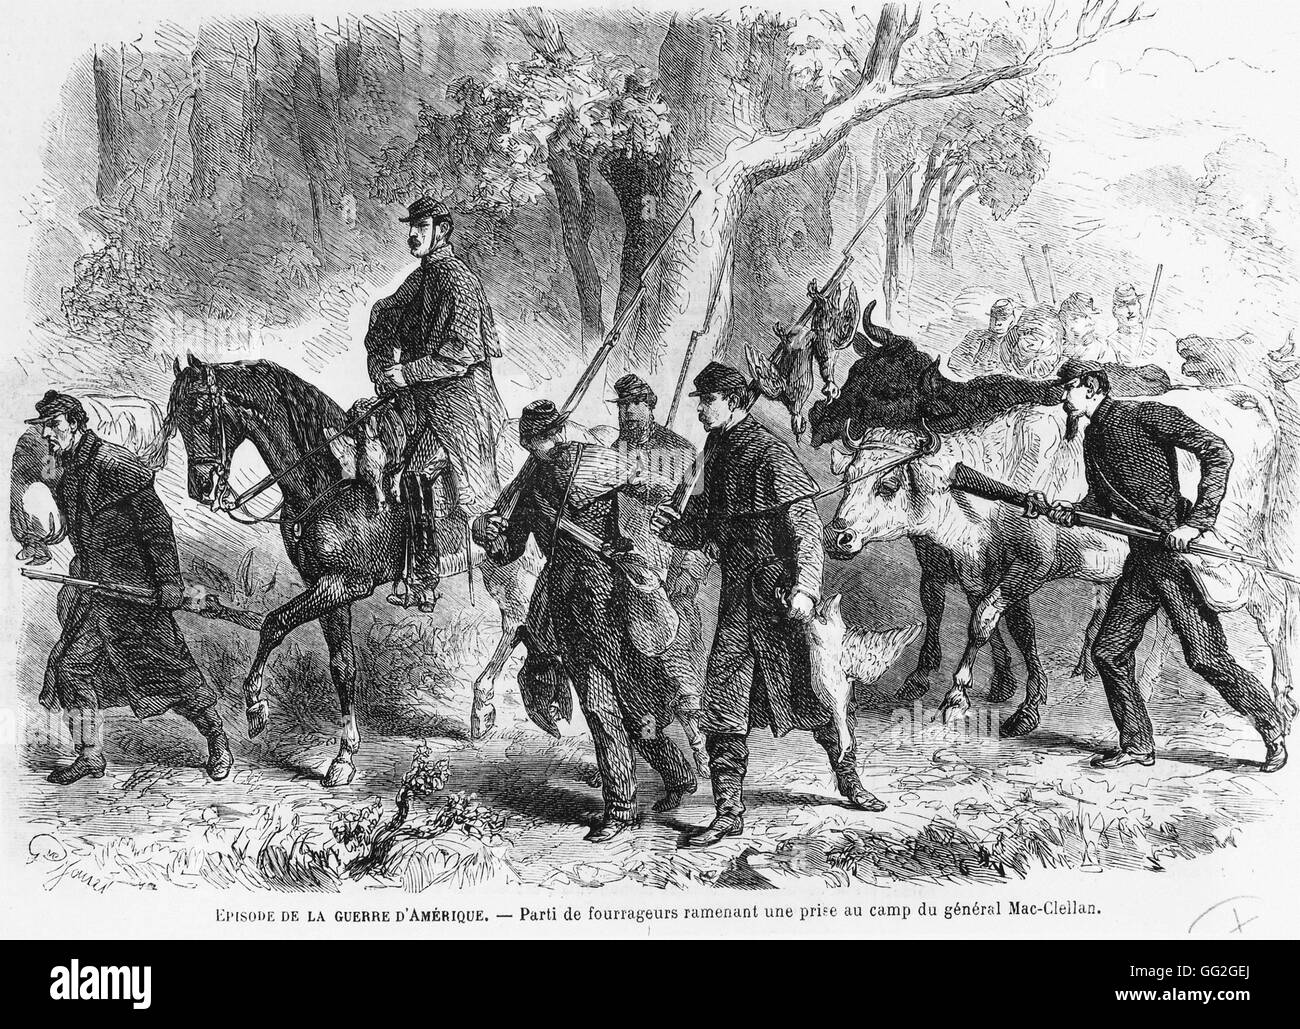 Der Bürgerkrieg: Jäger zurück bringen ihren Fang zum Camp von General George Brinton McClellan (Reiten). 1861-1865 Gravur Stockfoto